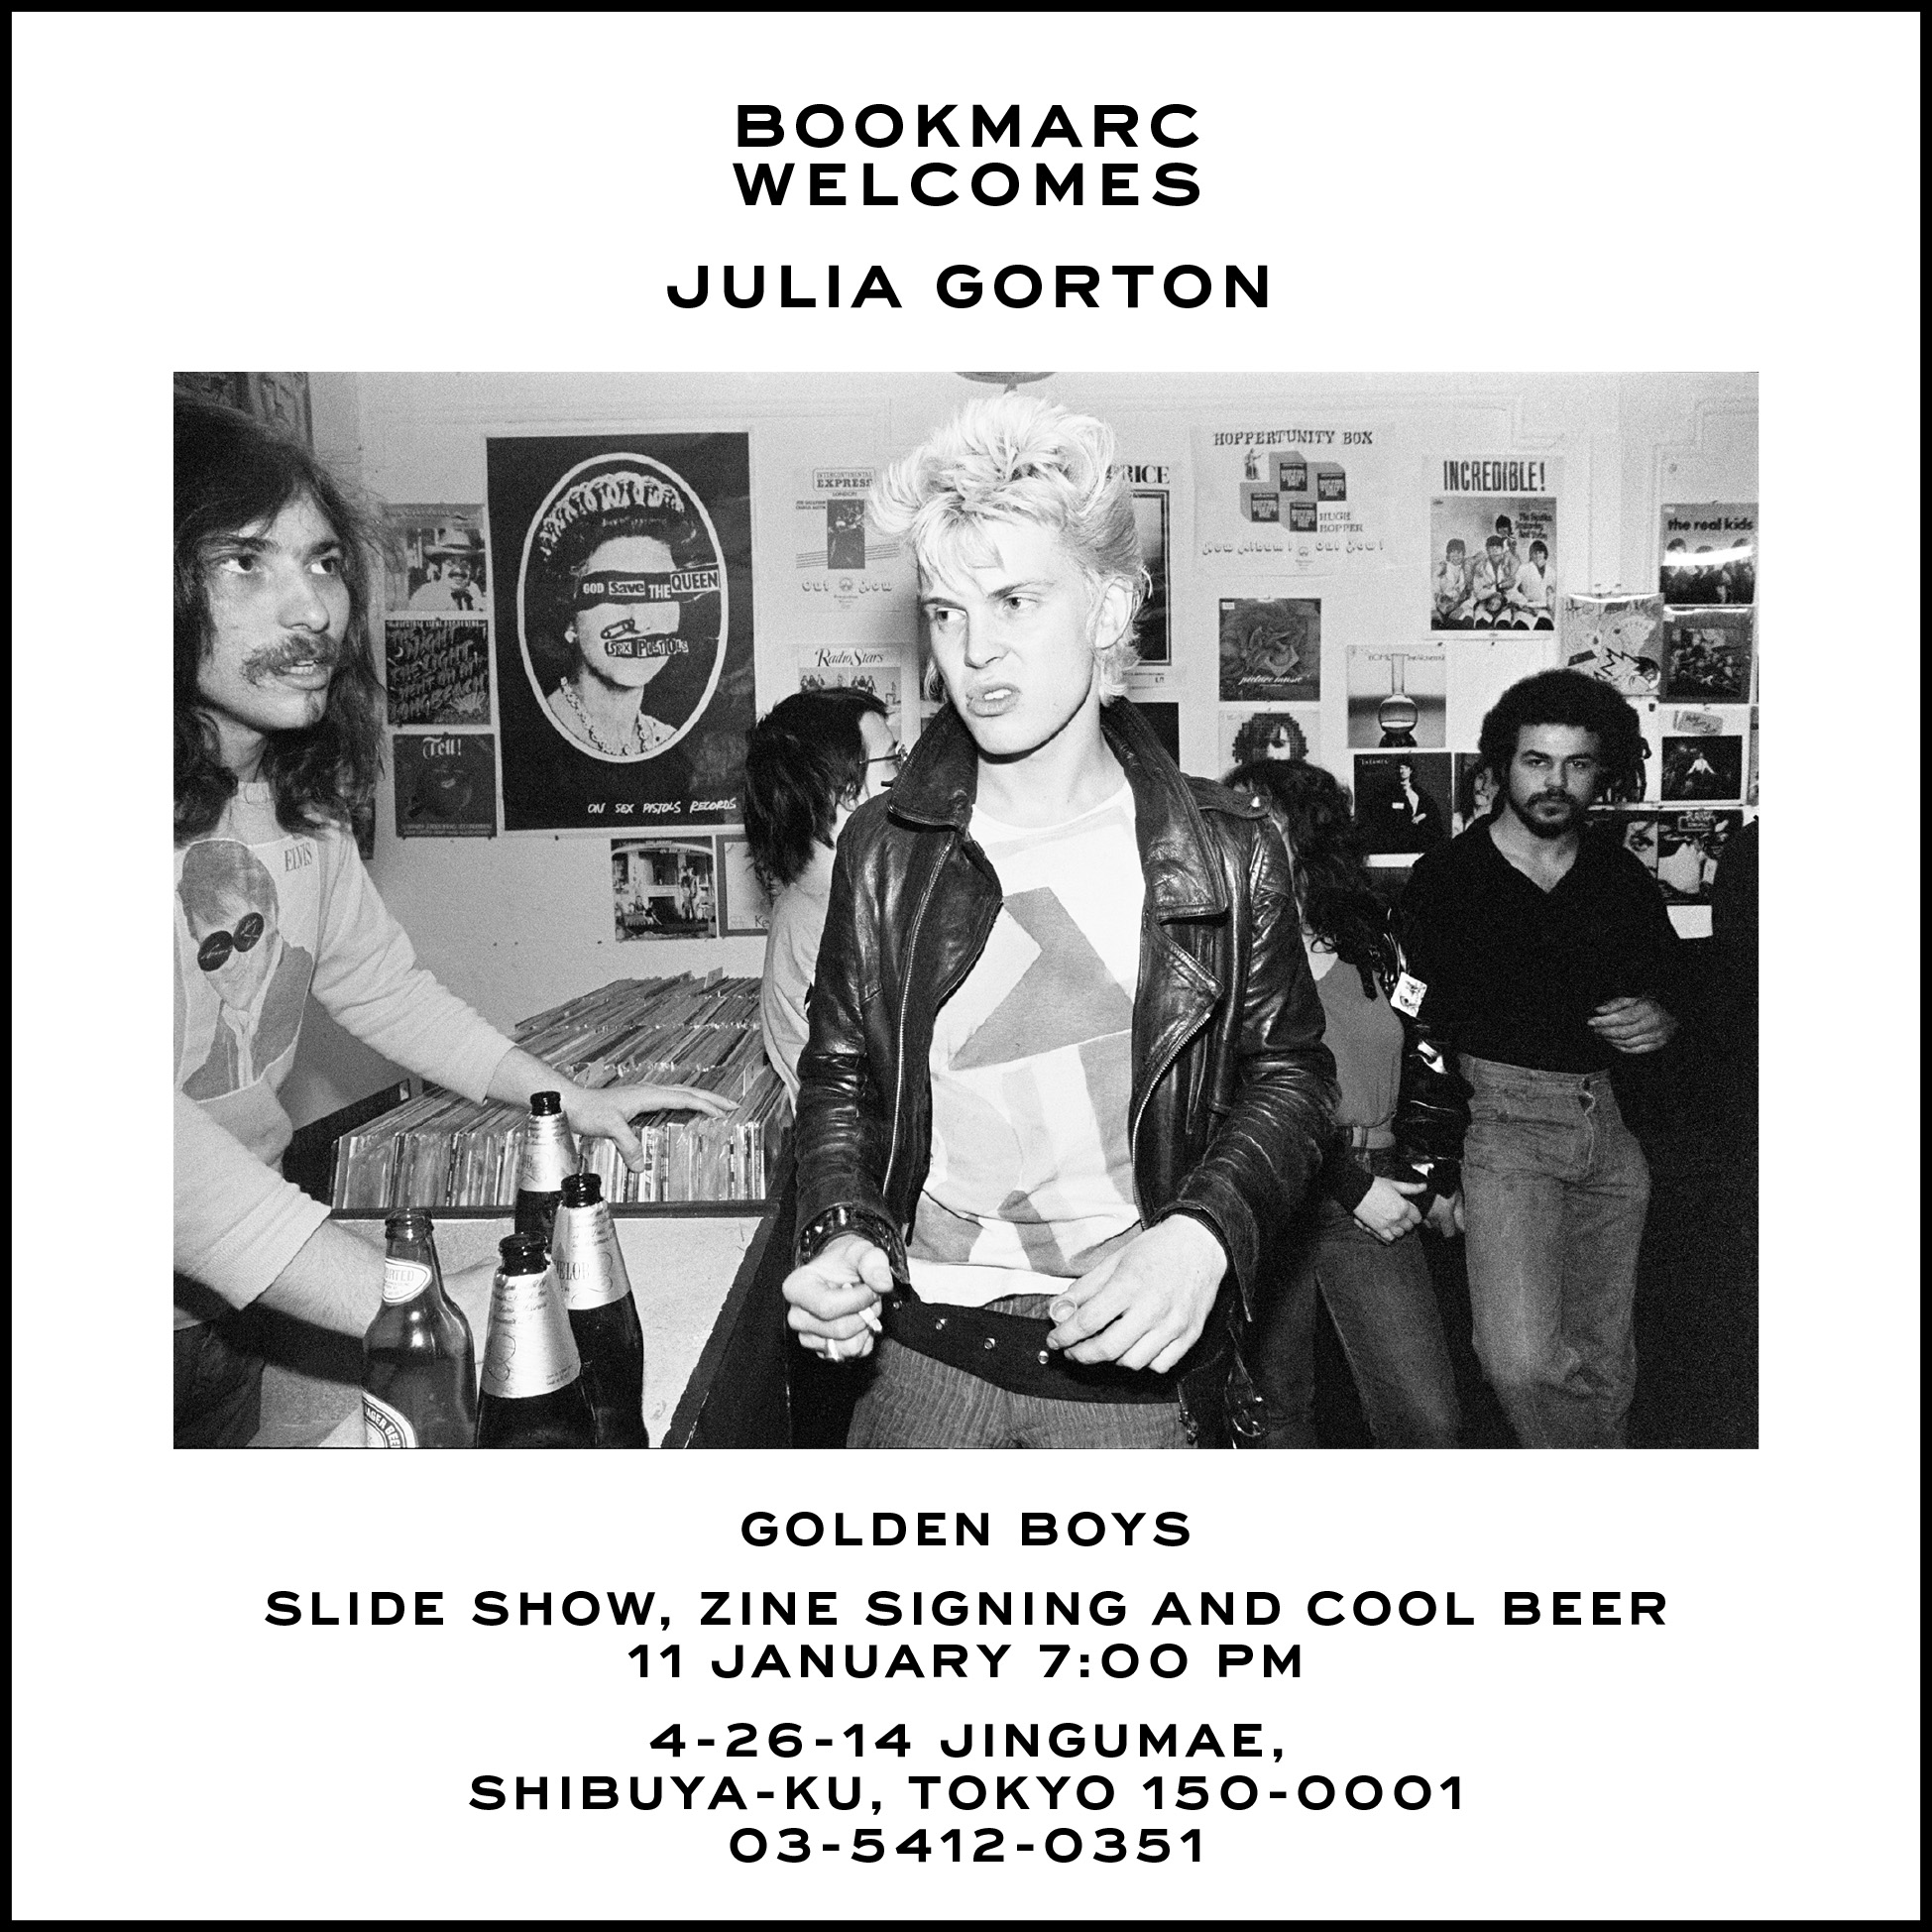 NYCパンク/NO WAVEシーンを知る写真家、Julia Gorton(ジュリア・ゴートン)の最新ZINE”Golden Boys”が上陸する。それを記念して「BOOKMARC」でサイン会が開催される。